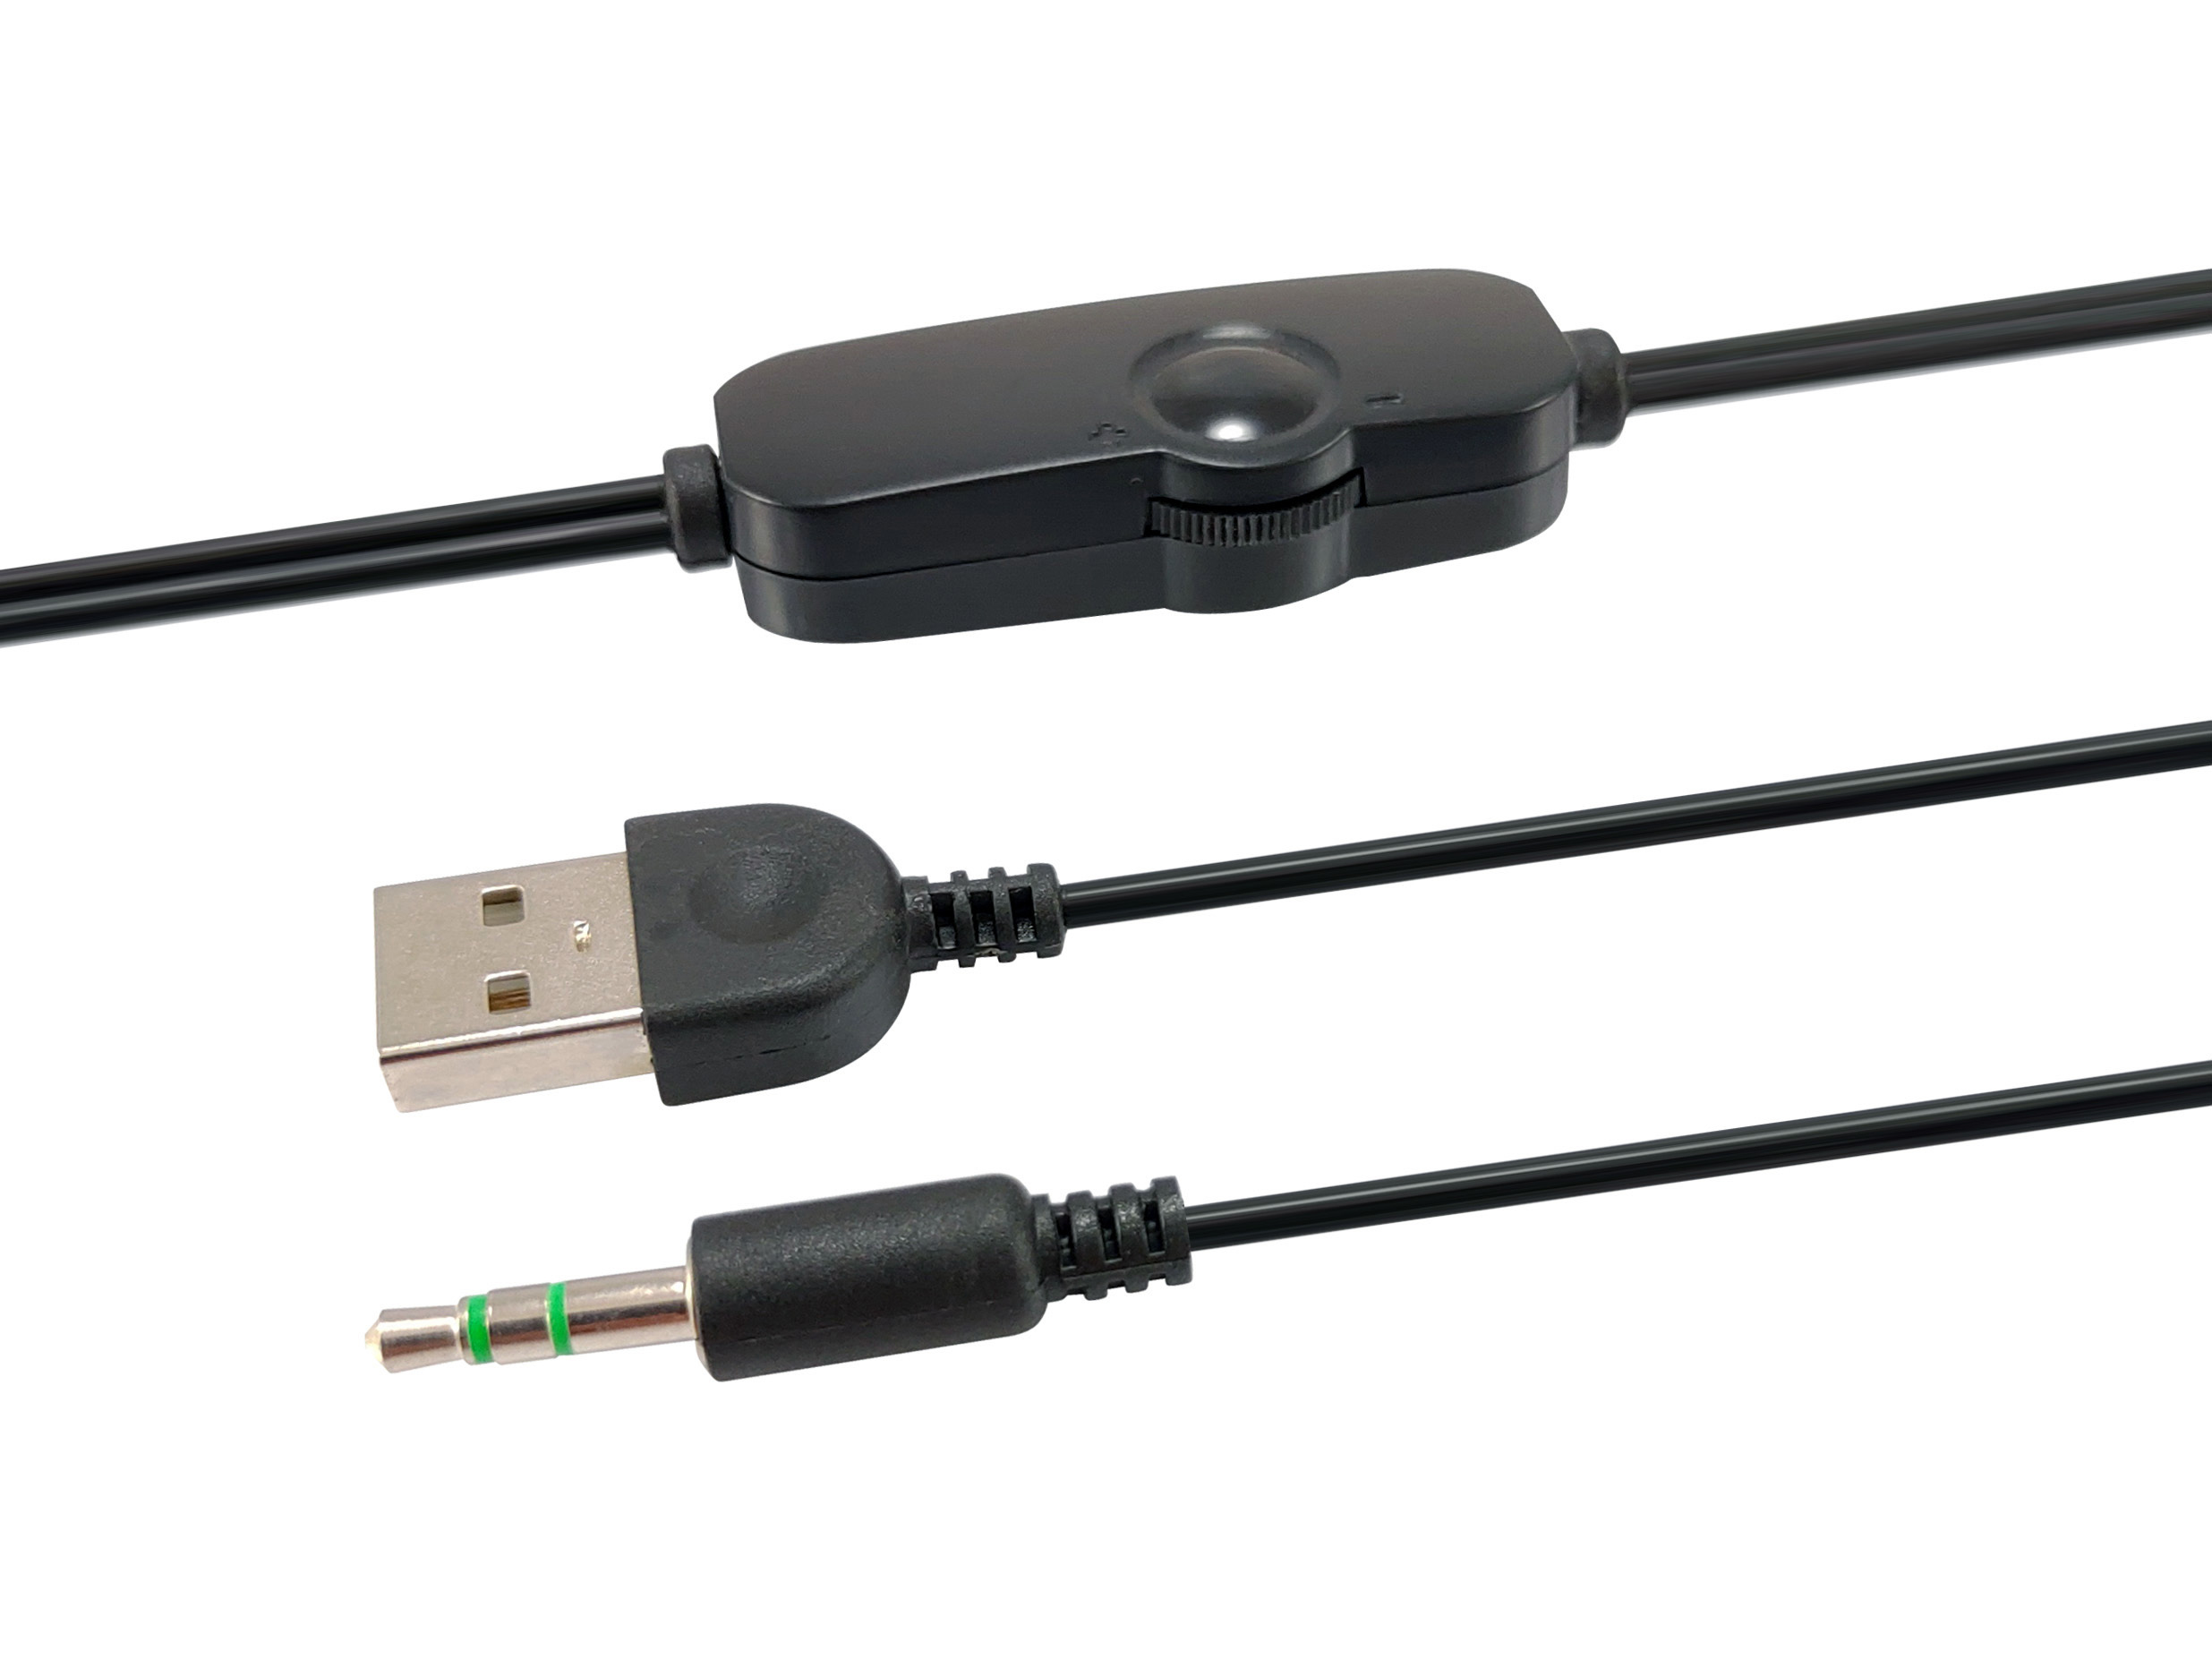 Equip Lautsprecher Mini für Notebook/PC, USB Powered sw/rt